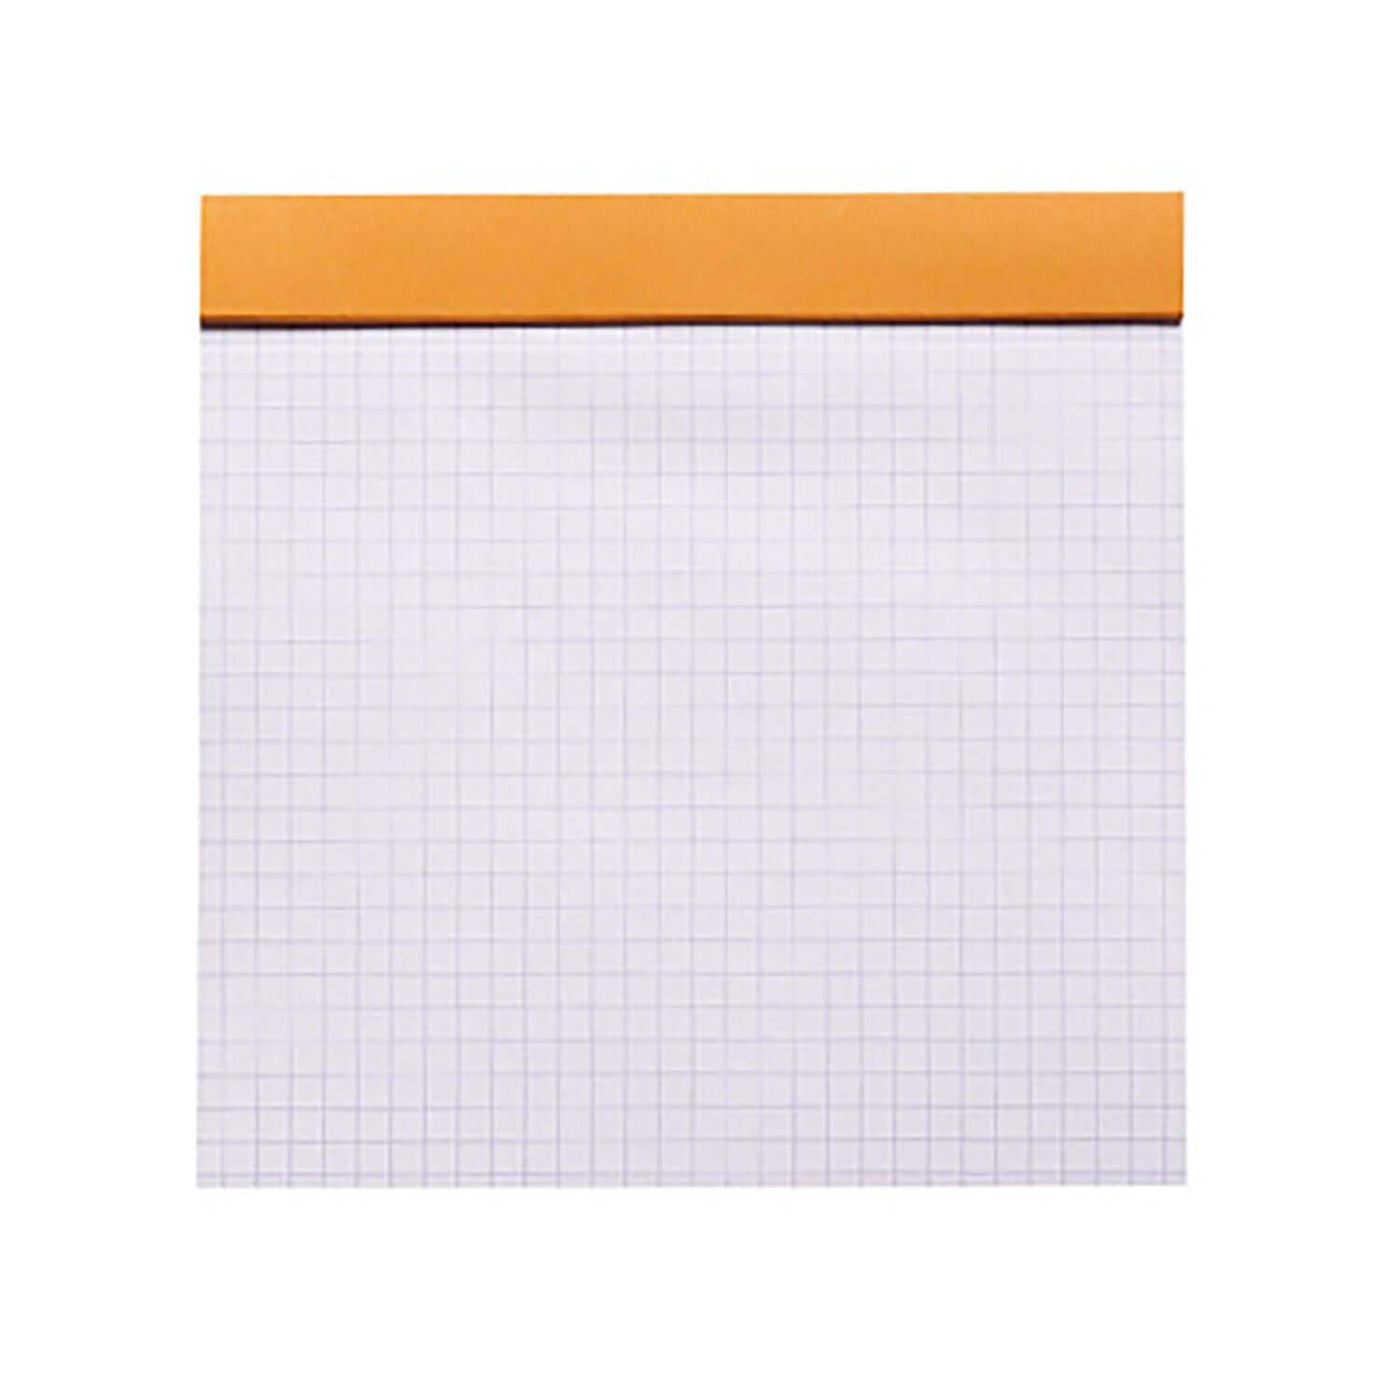 Rhodia Le Carre Notepad, Orange - Ruled 5